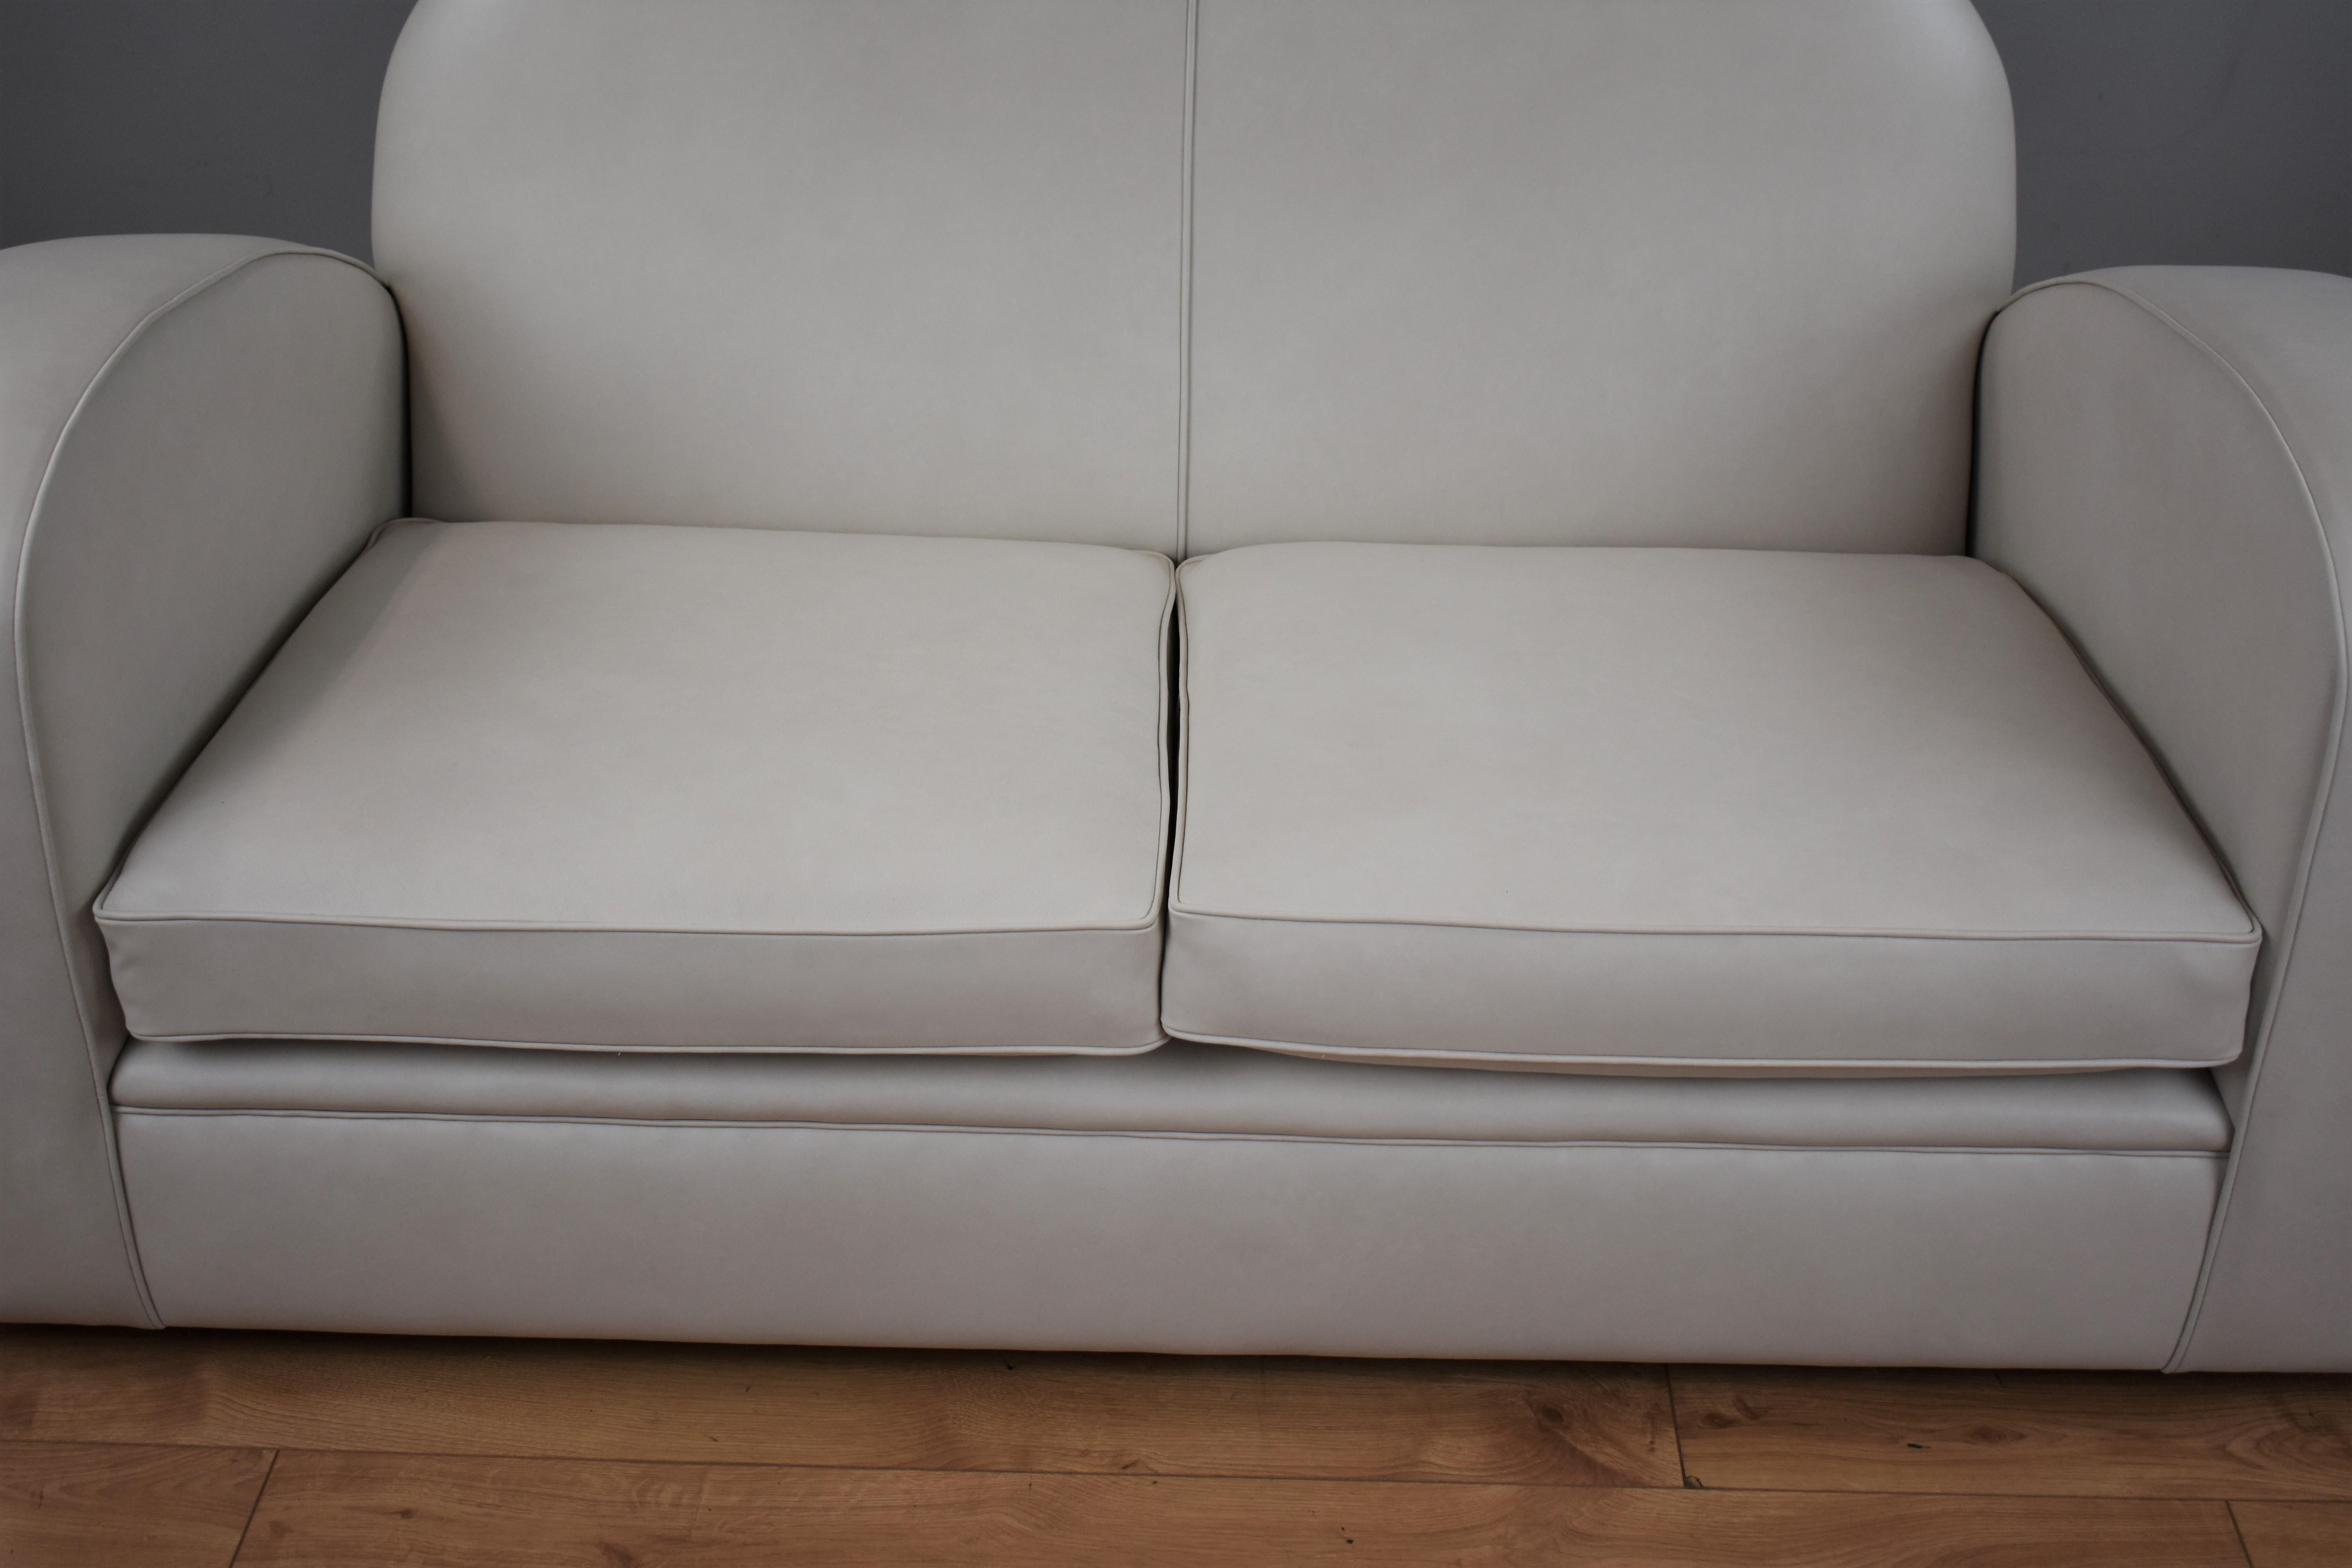 European Art Deco Style Leather Two-Seat Sofa